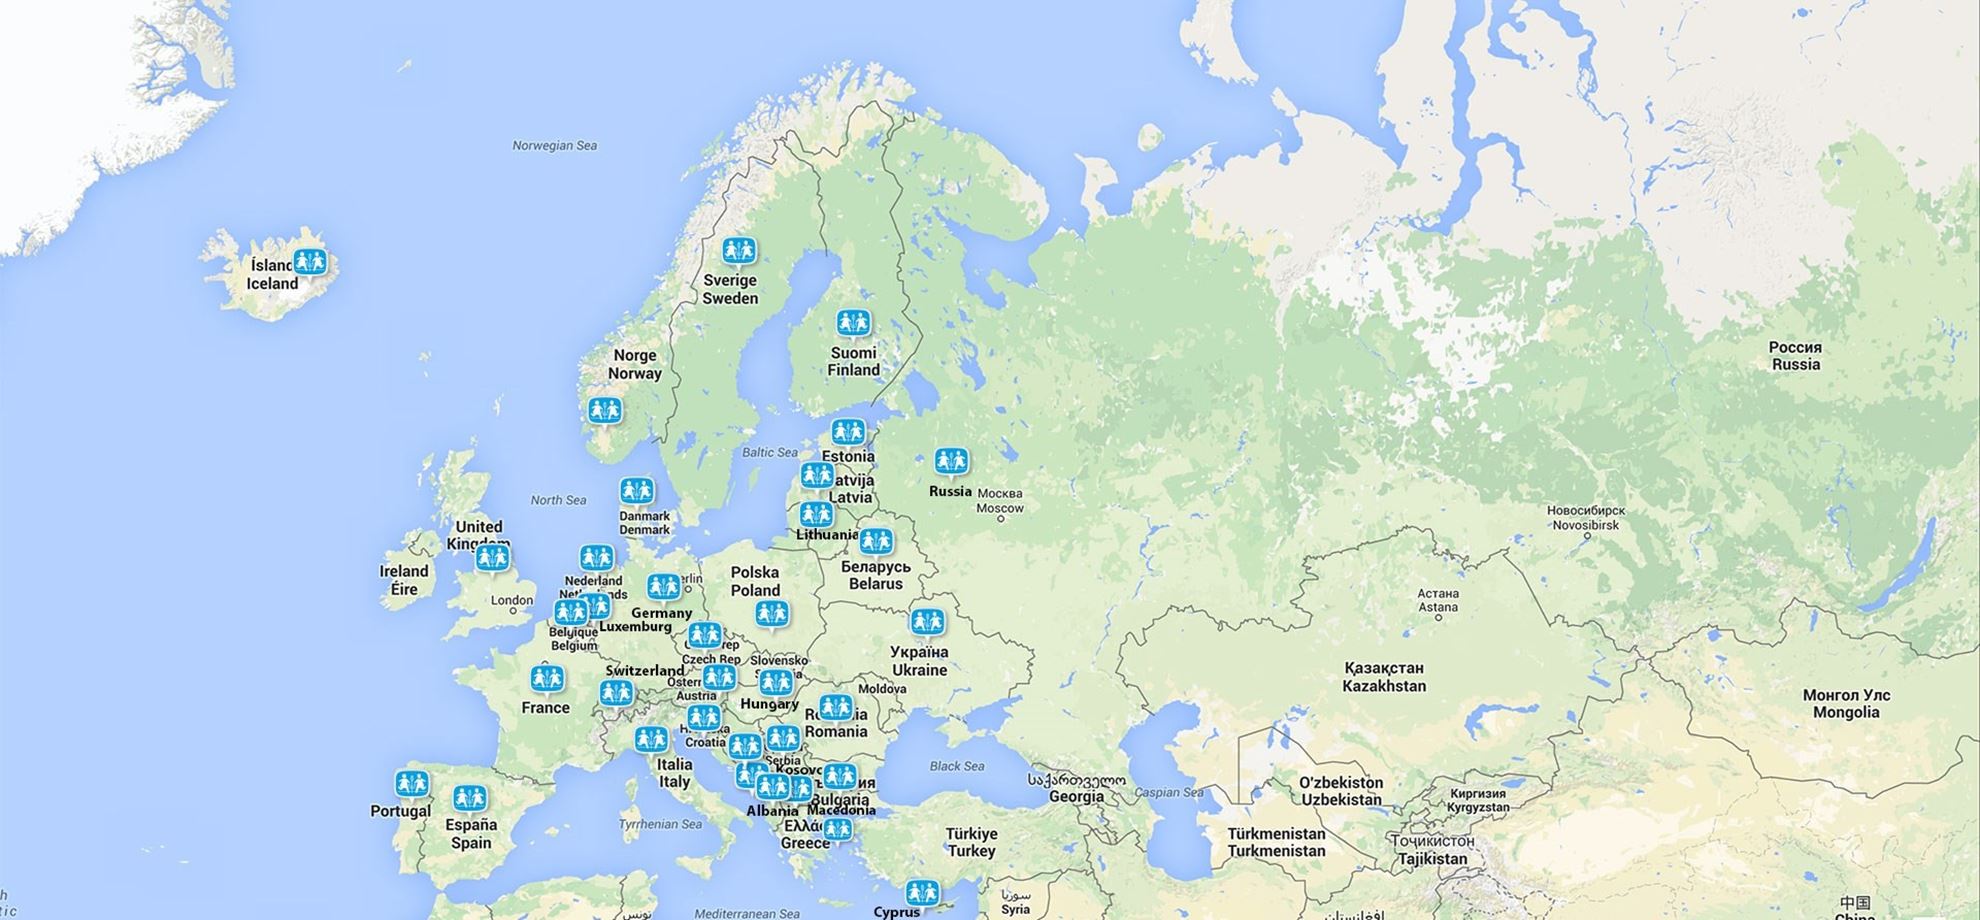 Kart over Europa med alle SOS-barnebyene markert med logo-ikoner. 